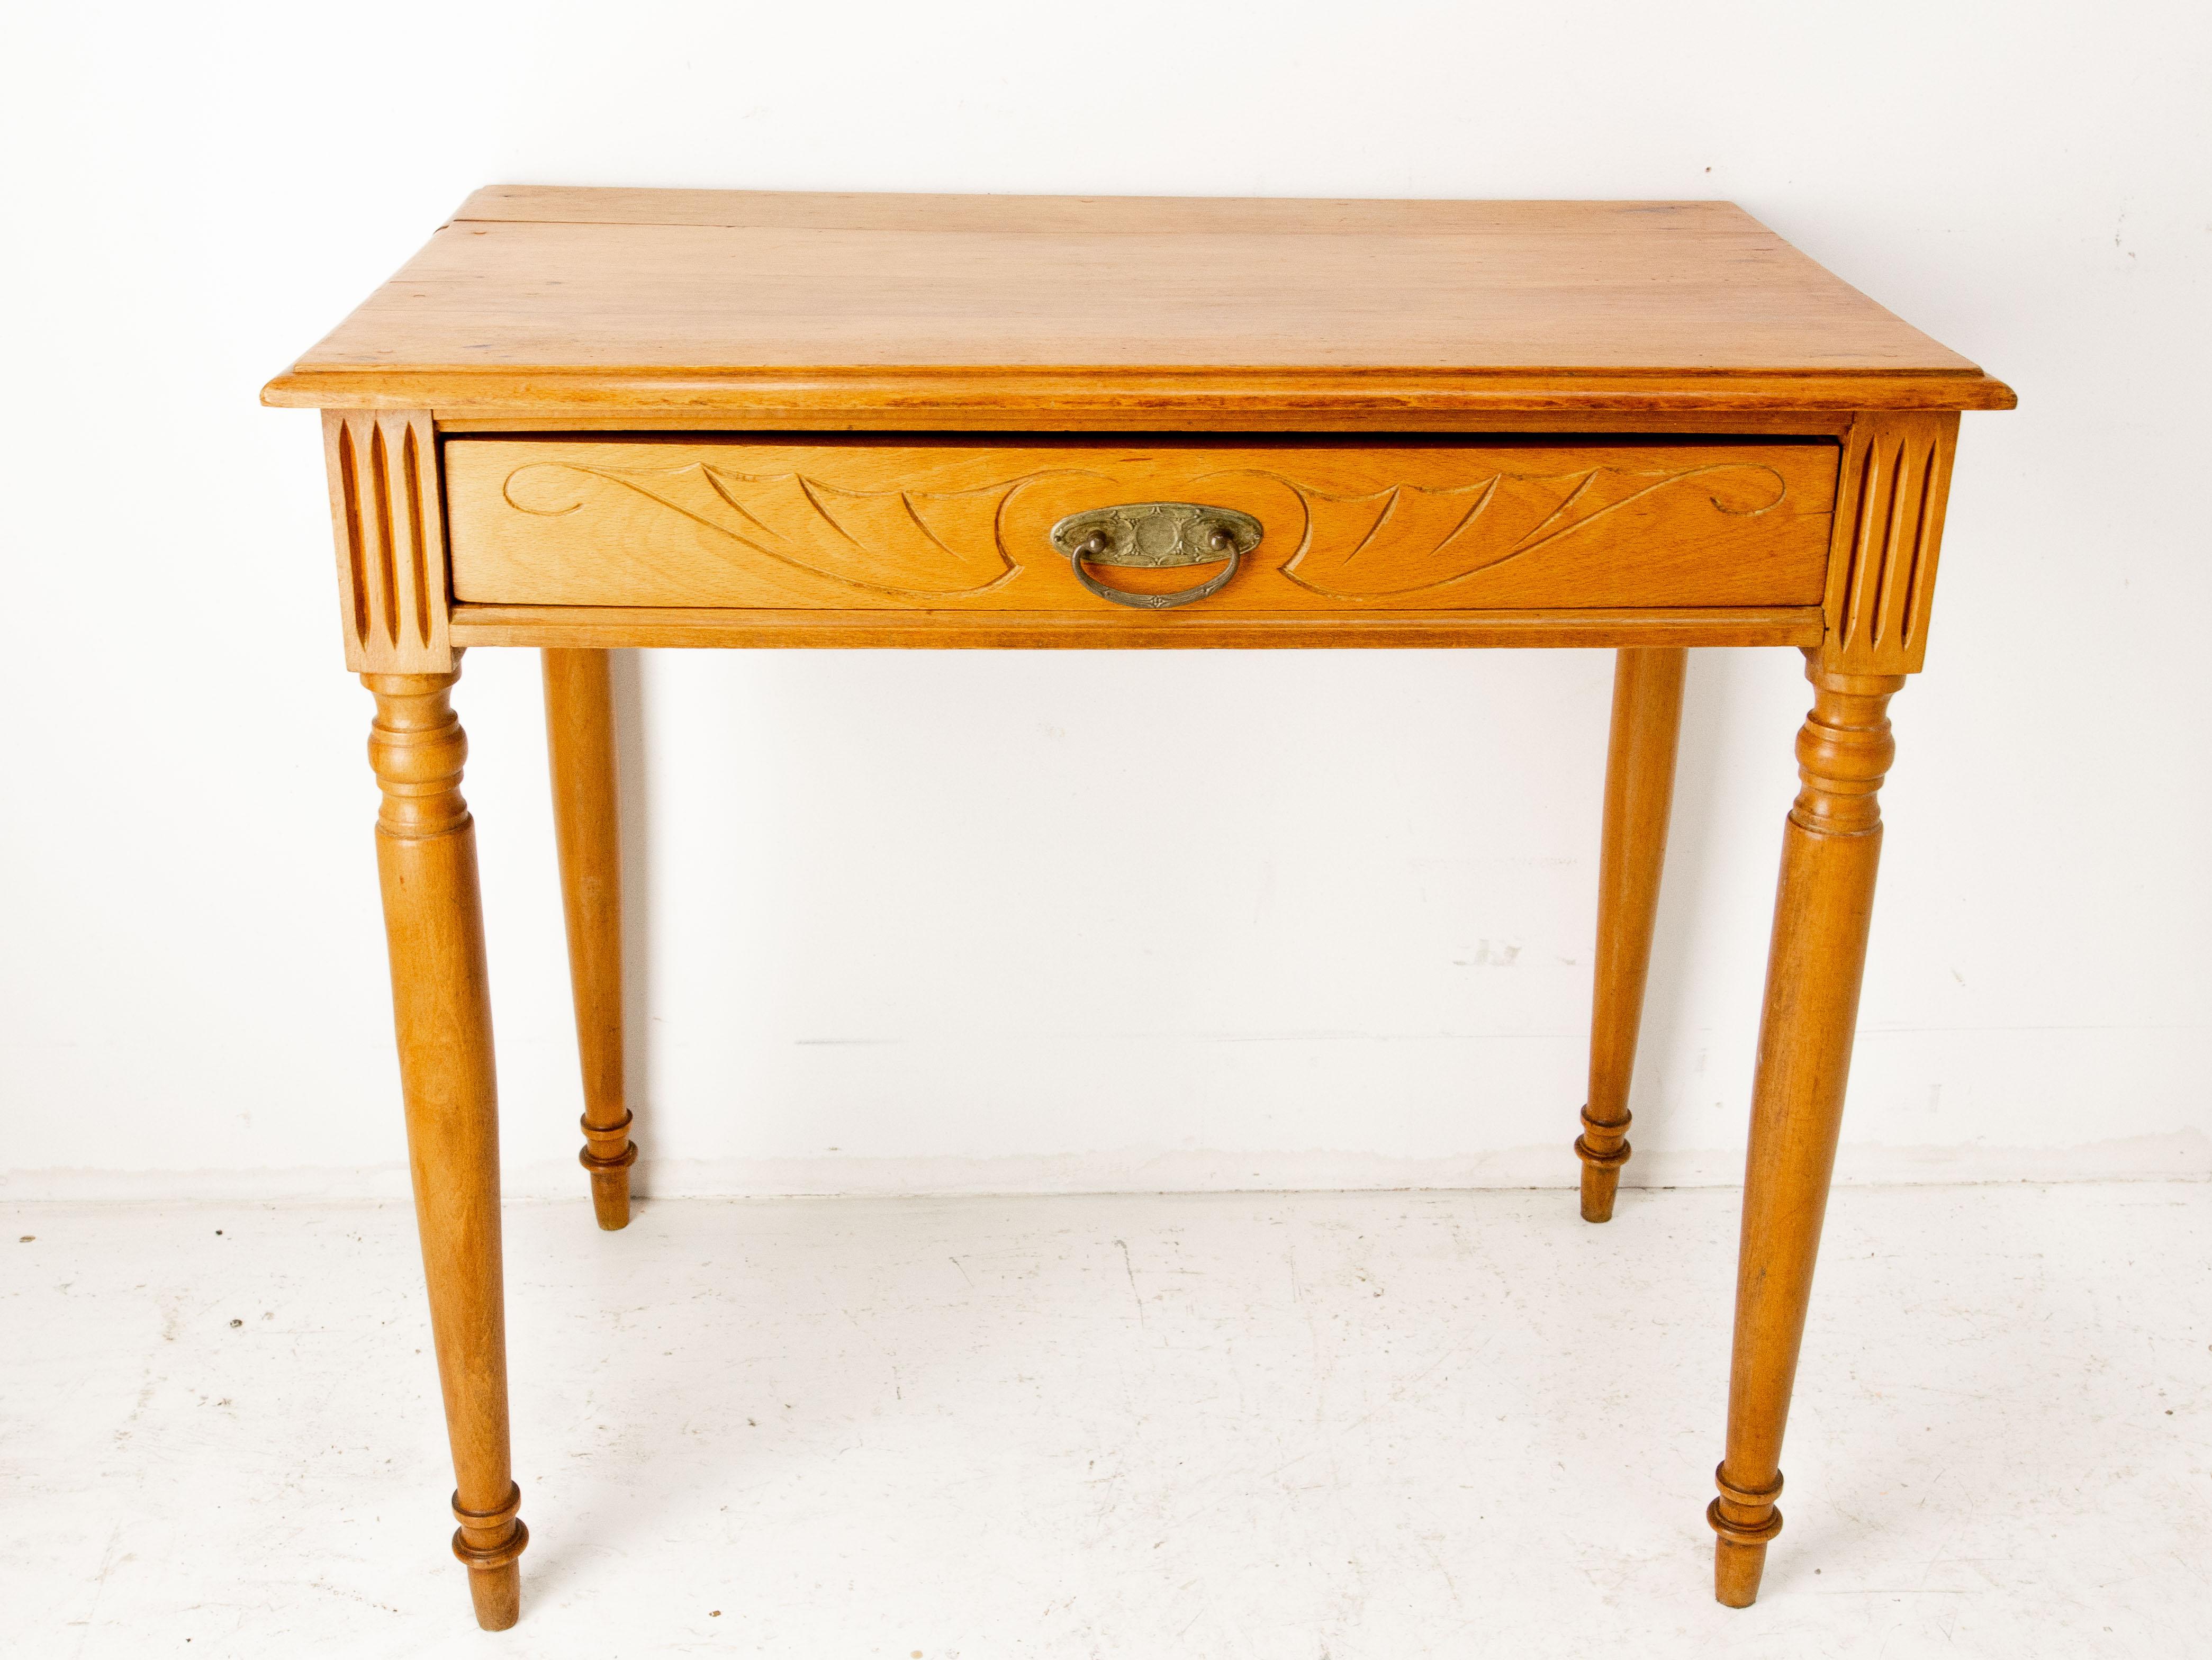 Französischer Schreibtisch, kleiner Schreibtisch oder Beistelltisch, um 1900.
Aus der Zeit des Jugendstils: die Schnitzerei der Schublade und des Griffs ist typisch für die Linien dieser Kunstrichtung. 
Die Buche ist kirschbaumfarben getönt,